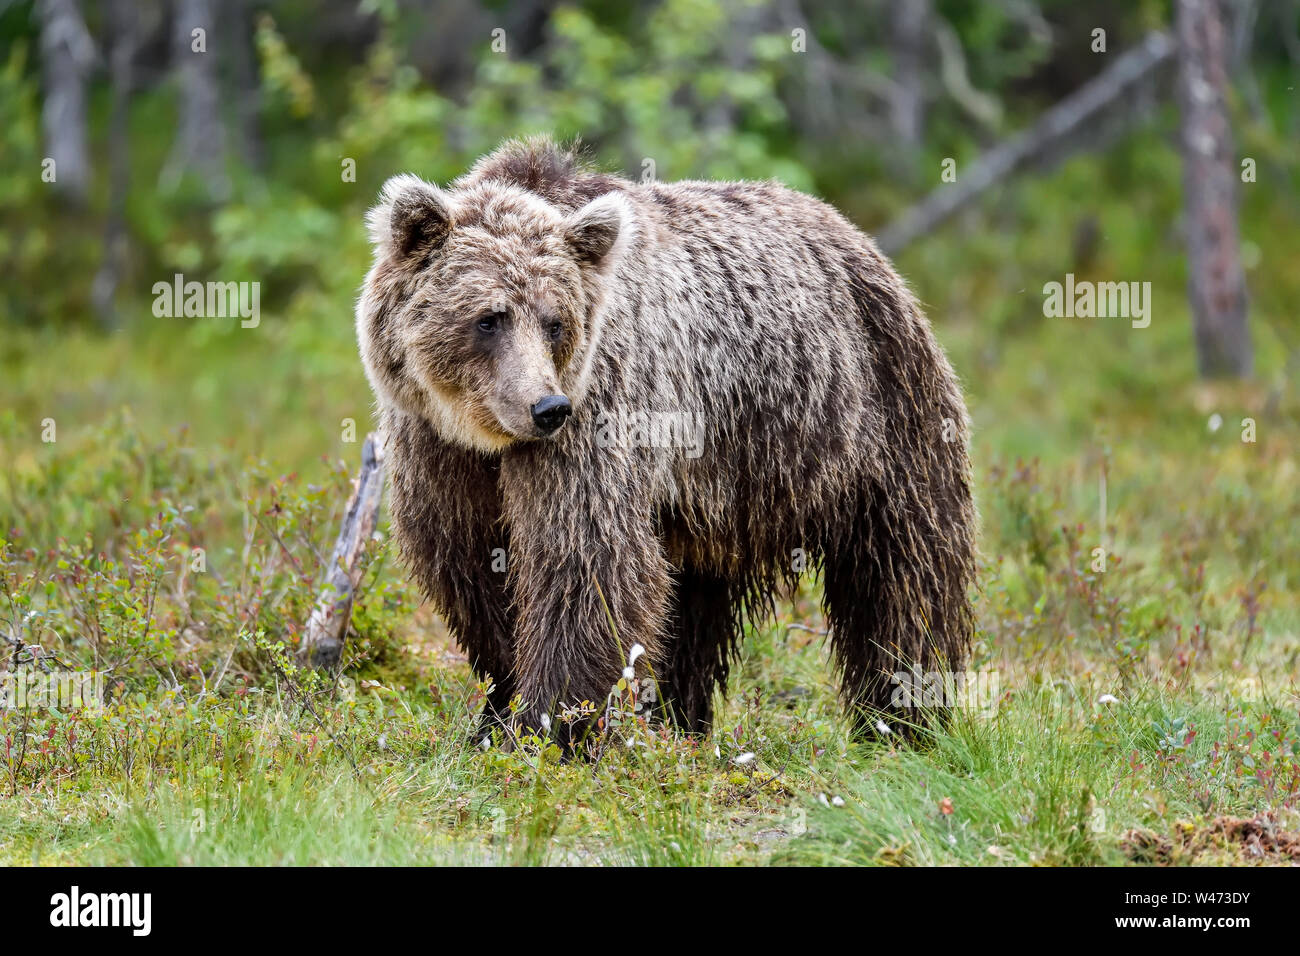 Basata sull'aspetto del viso di questo orso bruno, potrei riassumere come; "è stata una giornata difficile?". Foto Stock